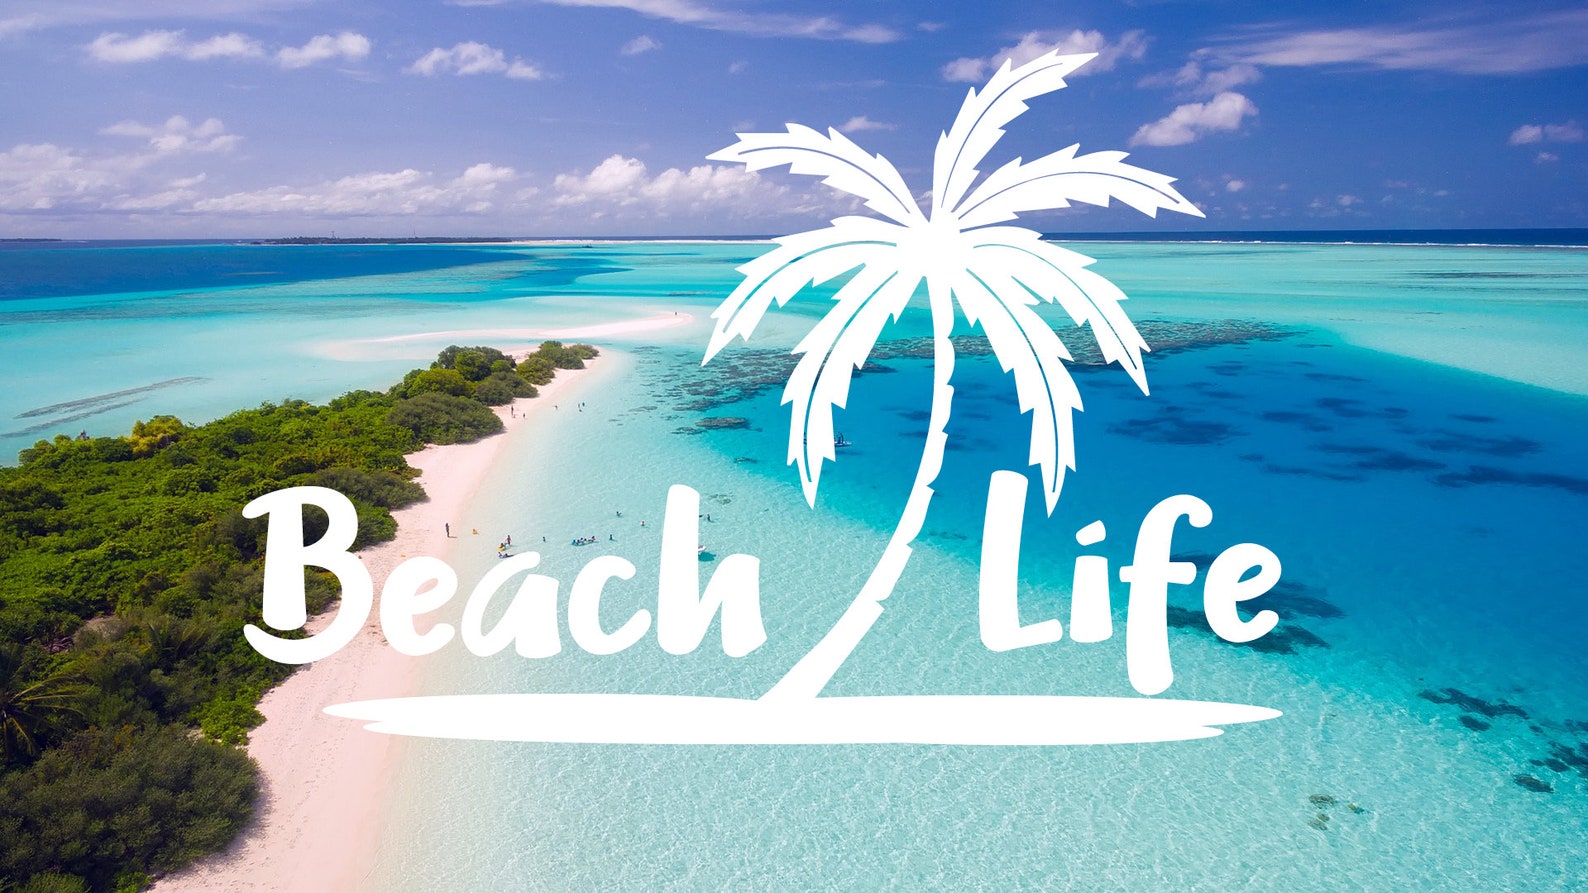 Life is beach. Life's a Beach.